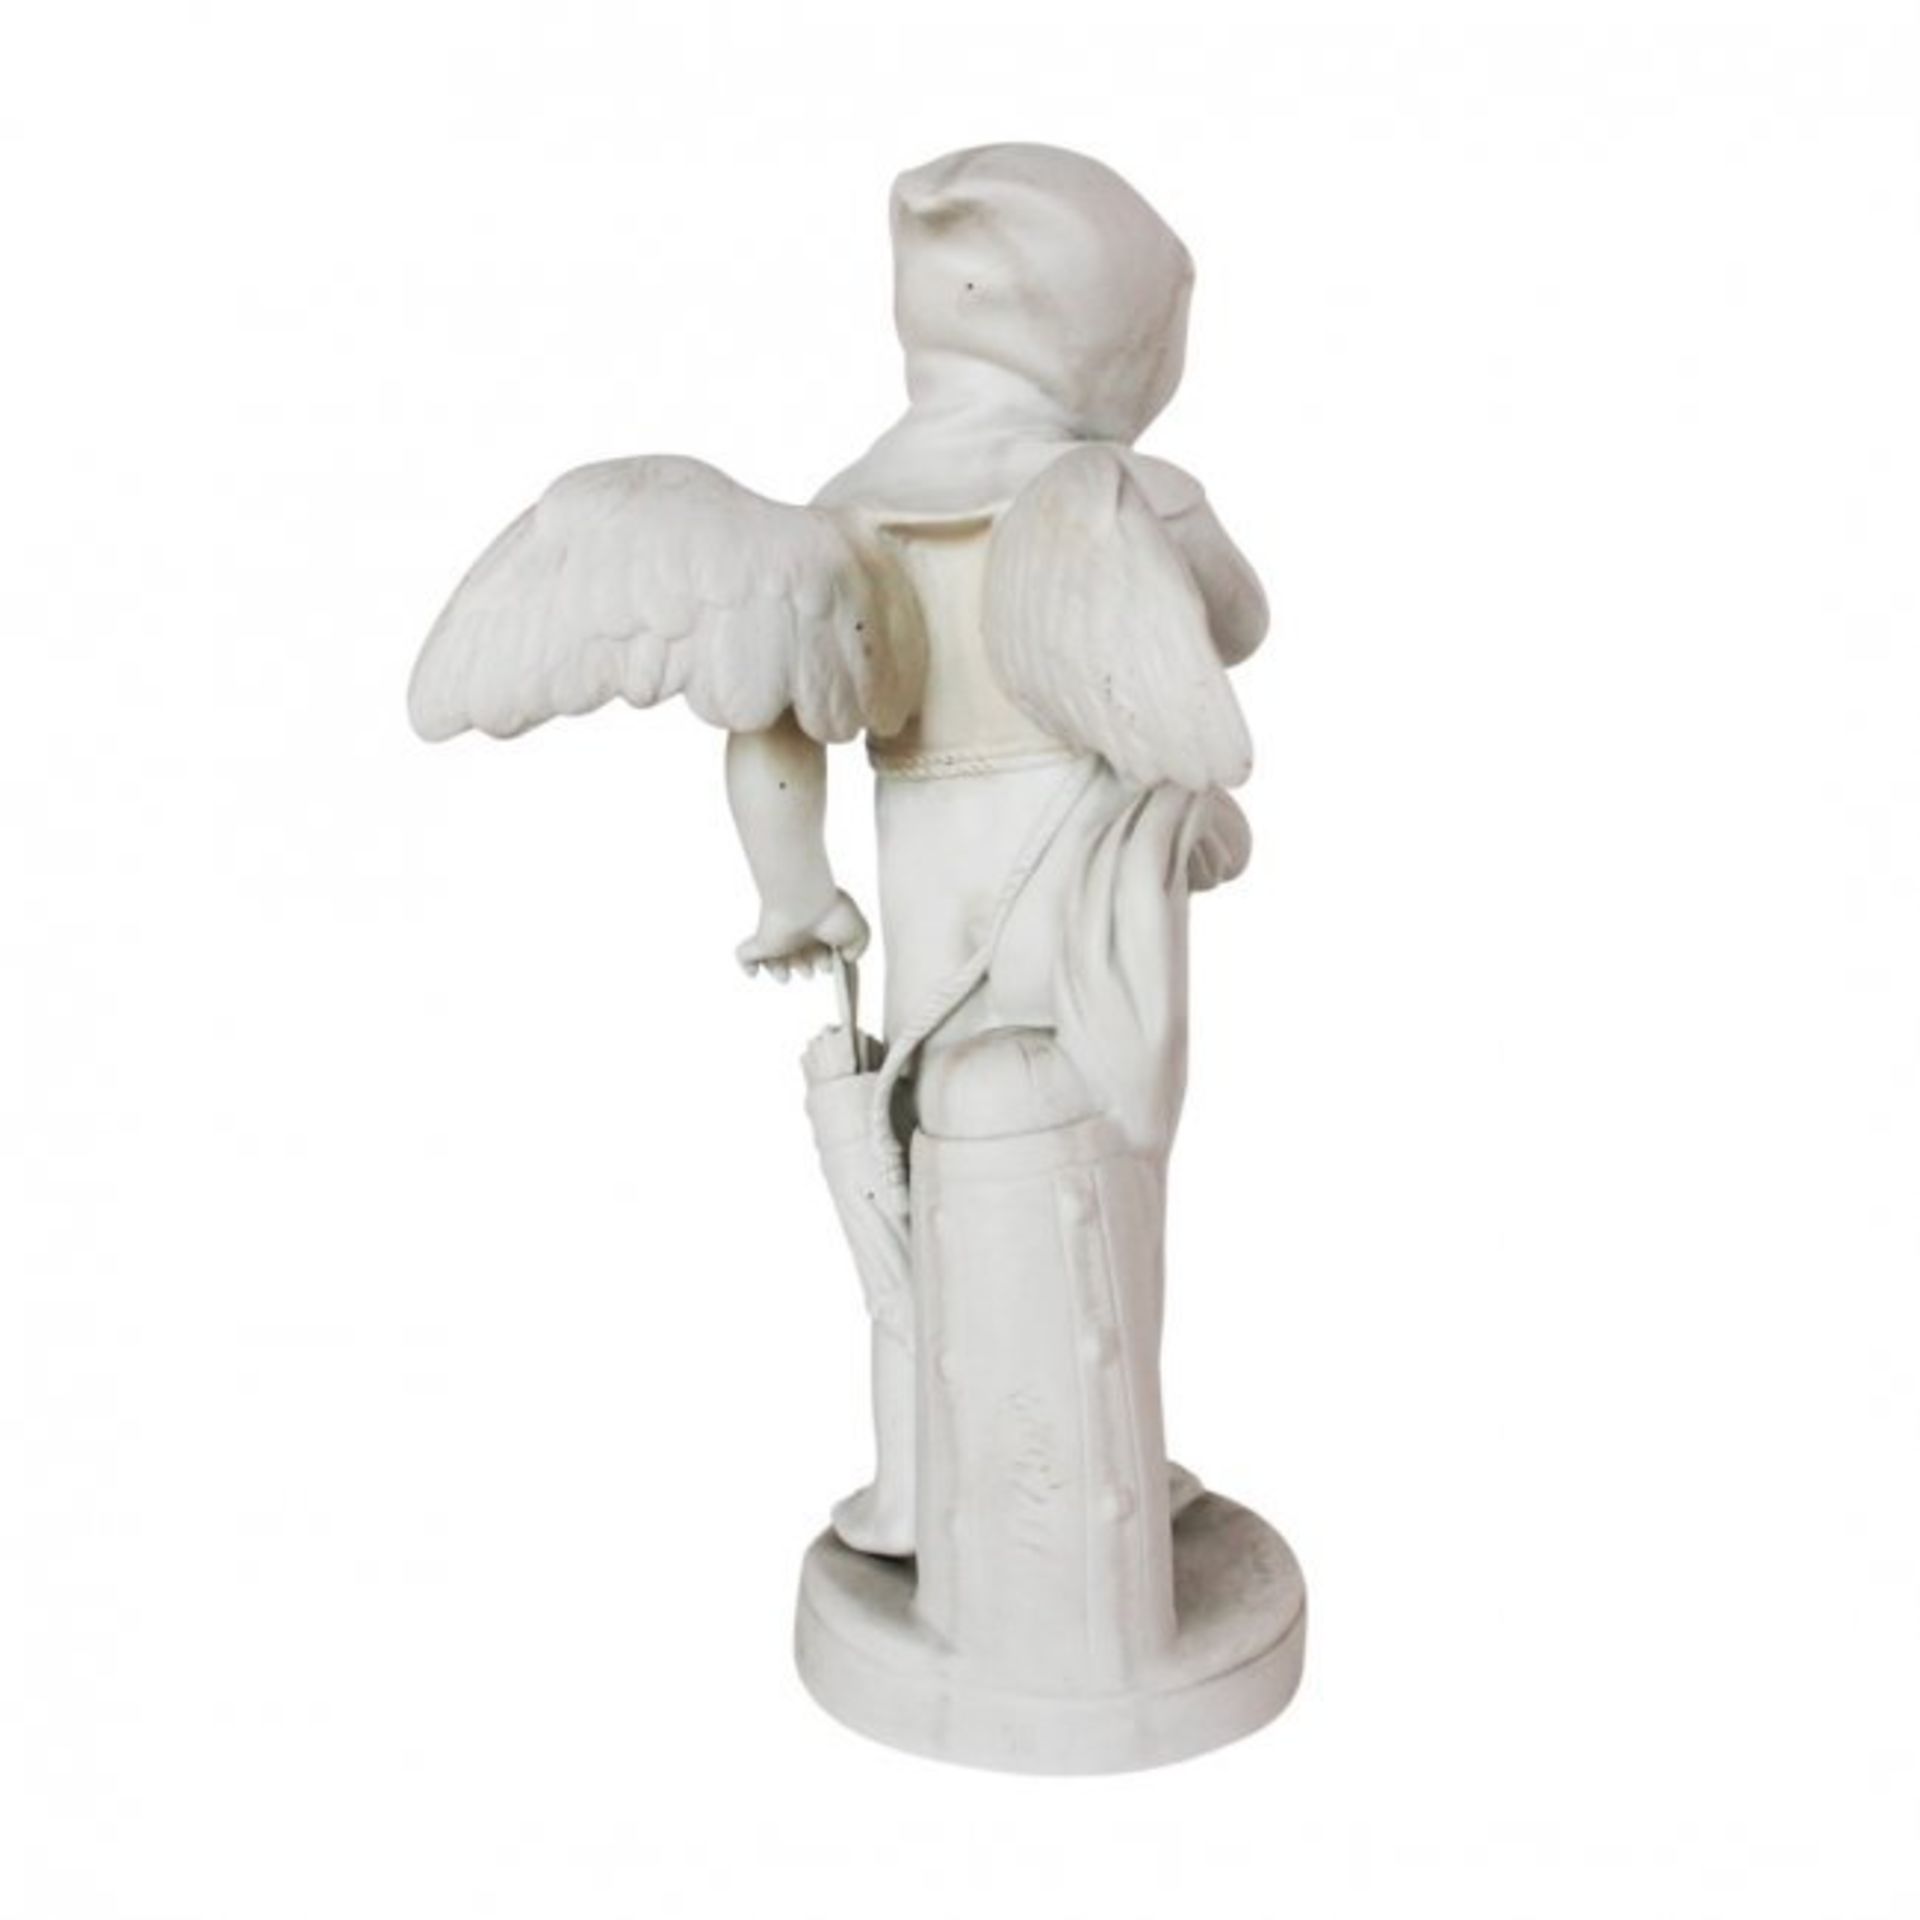 Louis-Simon Boizot bisque porcelain sculpture “Amur” - Image 2 of 2